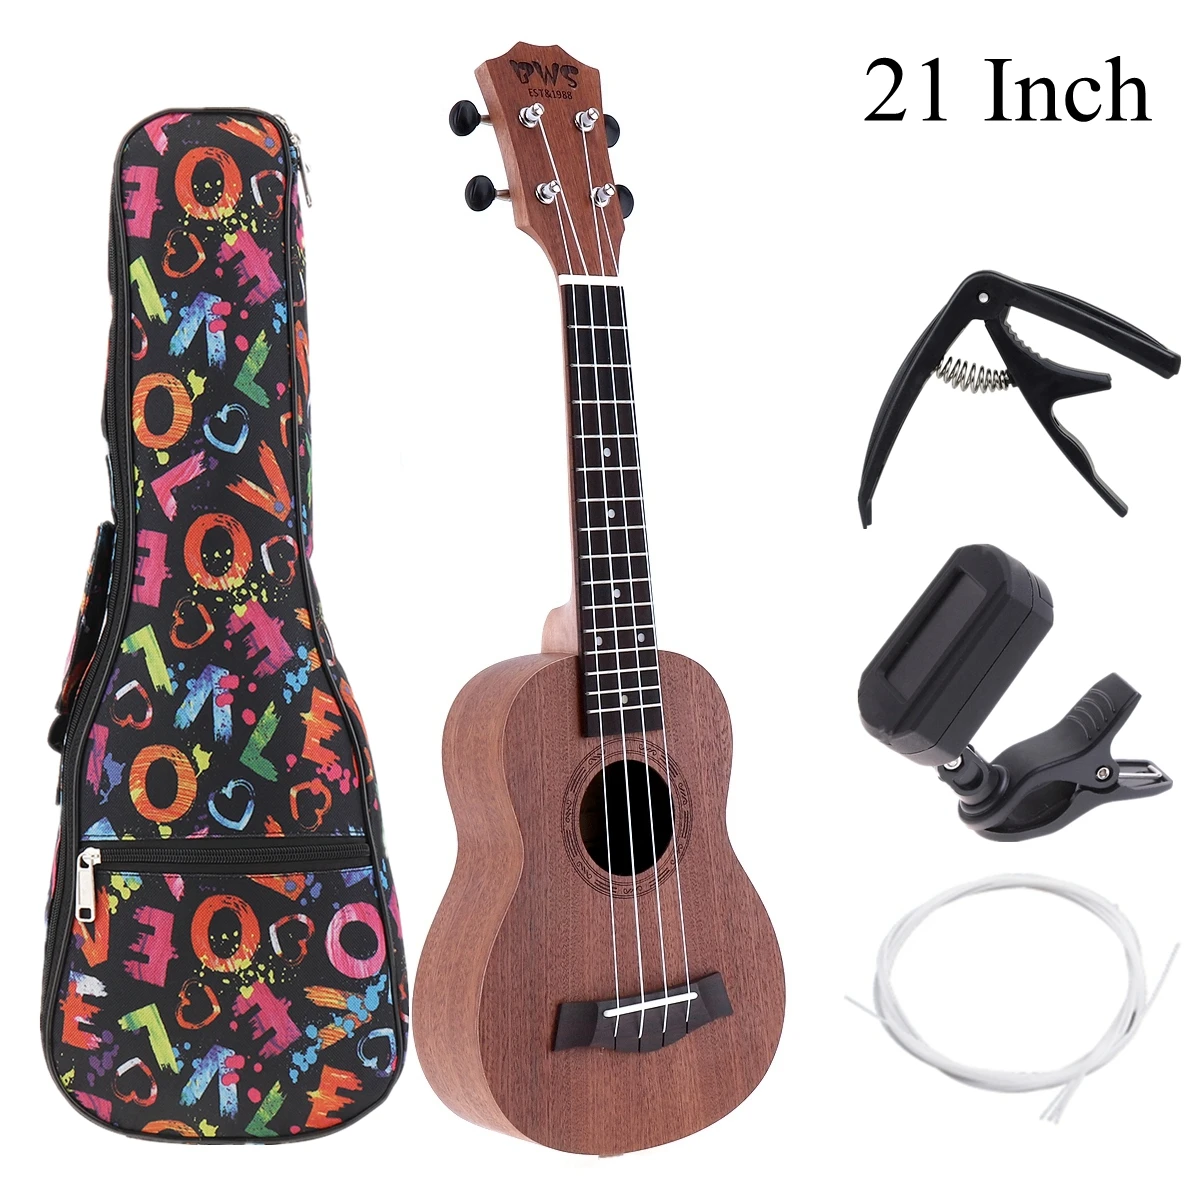 Ukulele Combo 21/23/26inch Ukulele Black Soprano 4 Strings Uke Hawaii Bass Stringed Musical Instrument Set Kits+Tuner+String+Bag